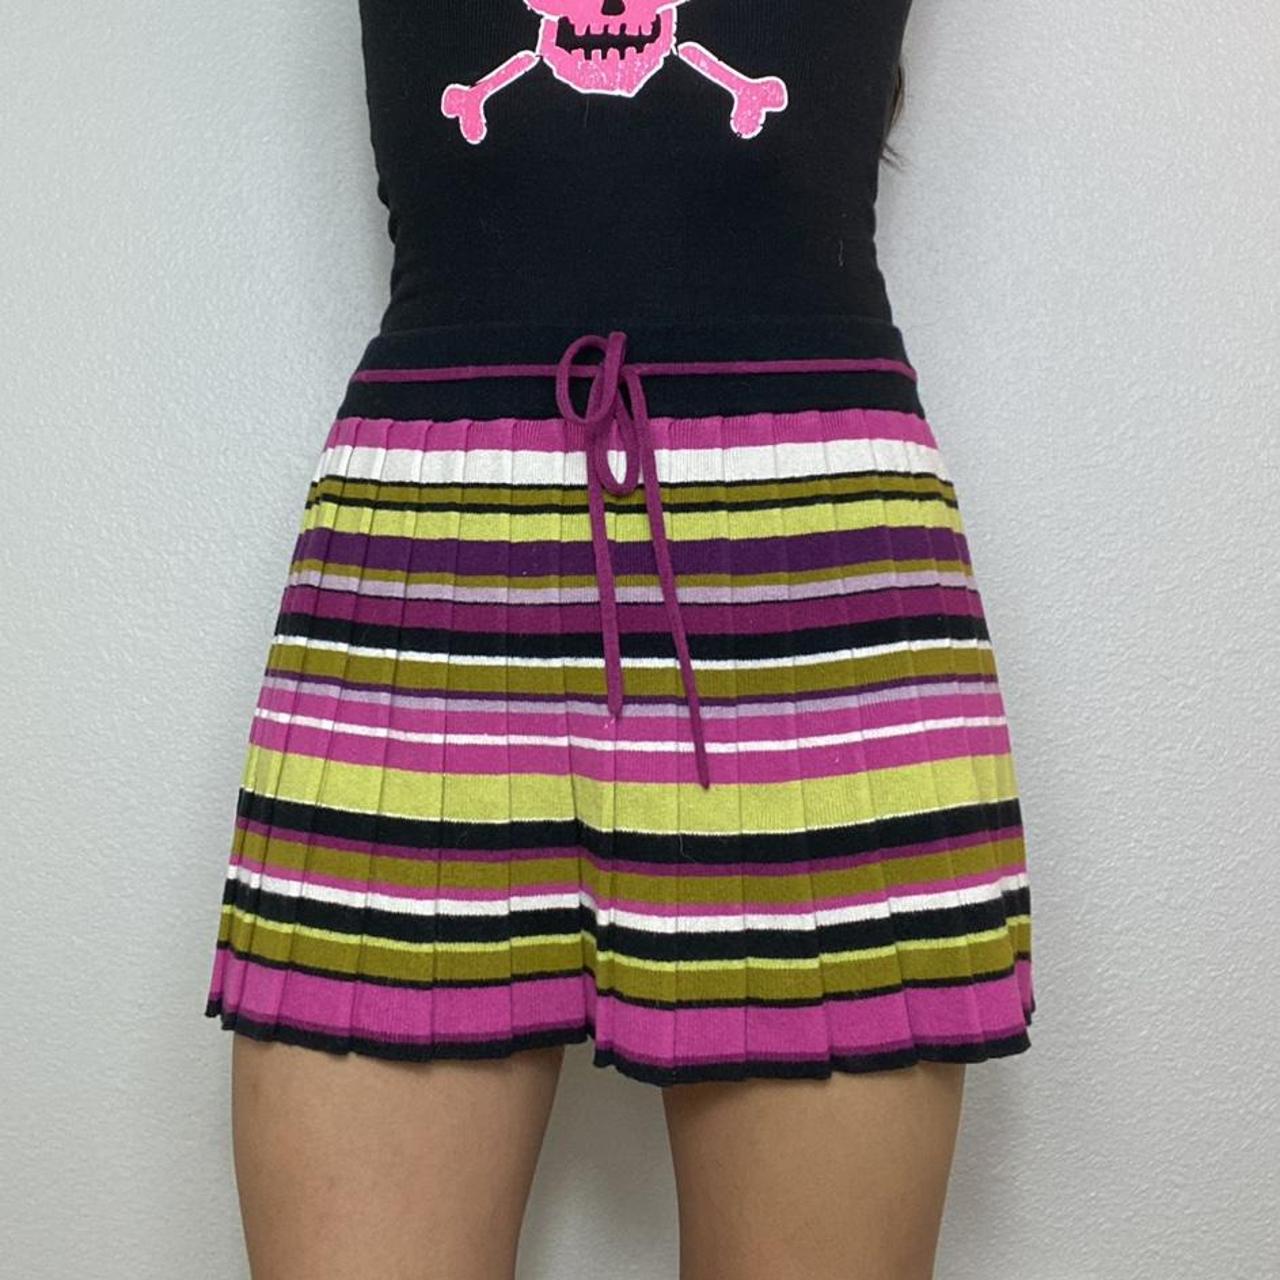 Missoni Women's Multi Skirt